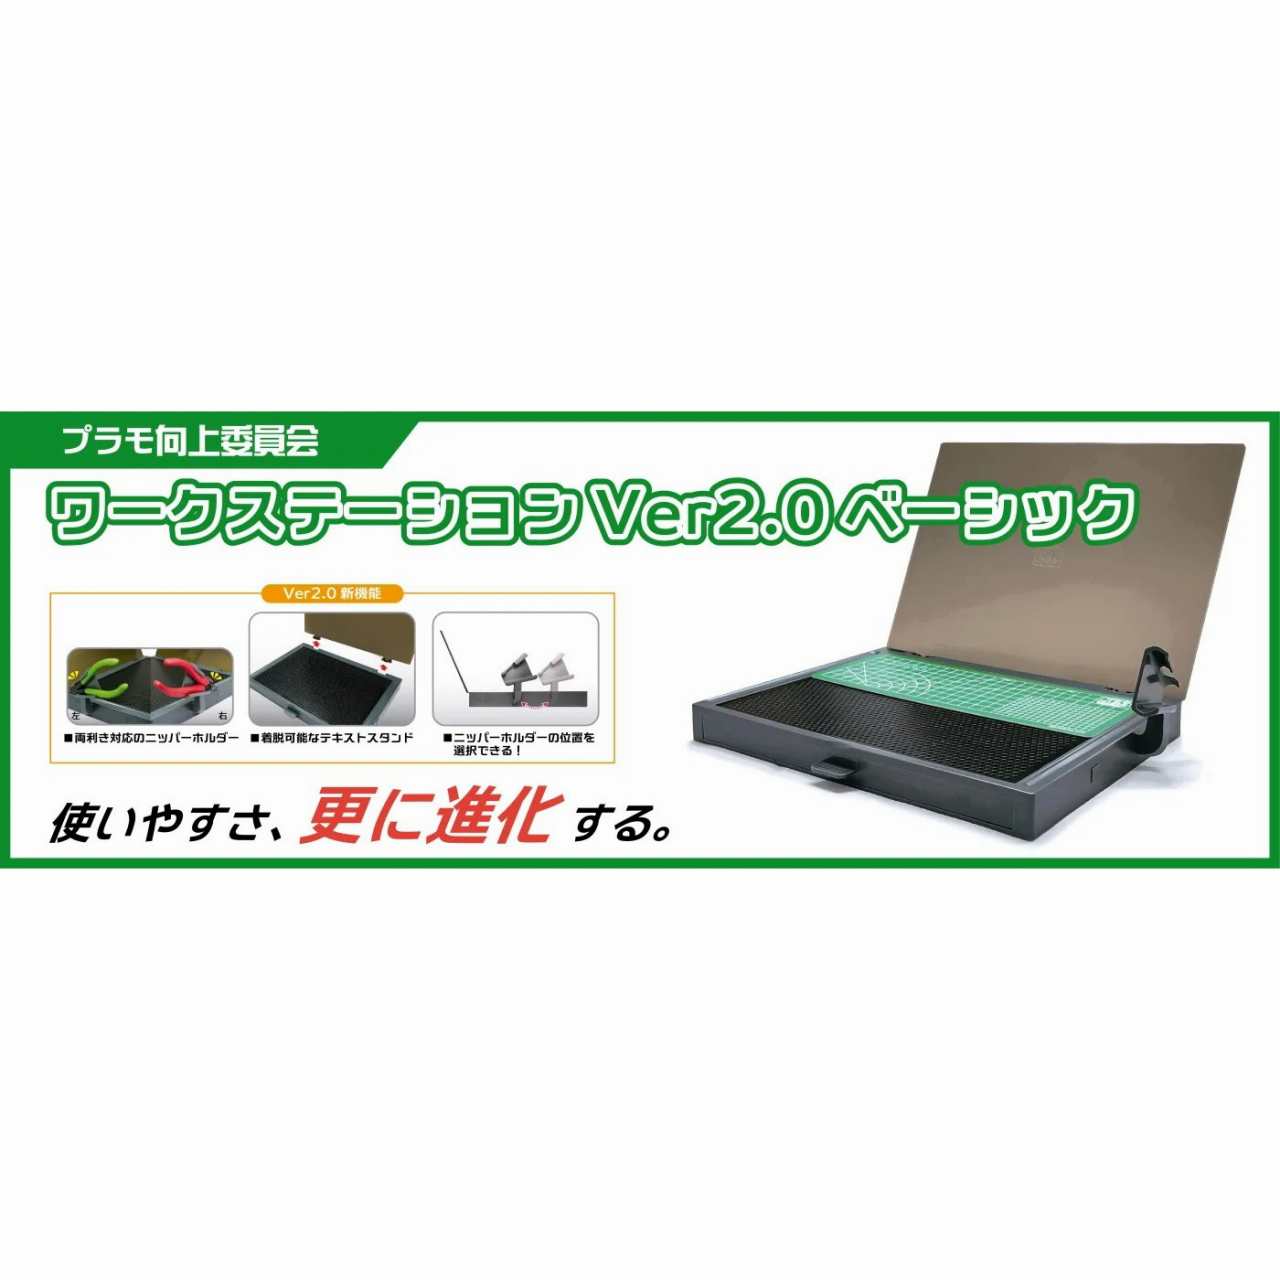 【新製品】PMKJ018 ワークステーション Ver 2.0 Basic